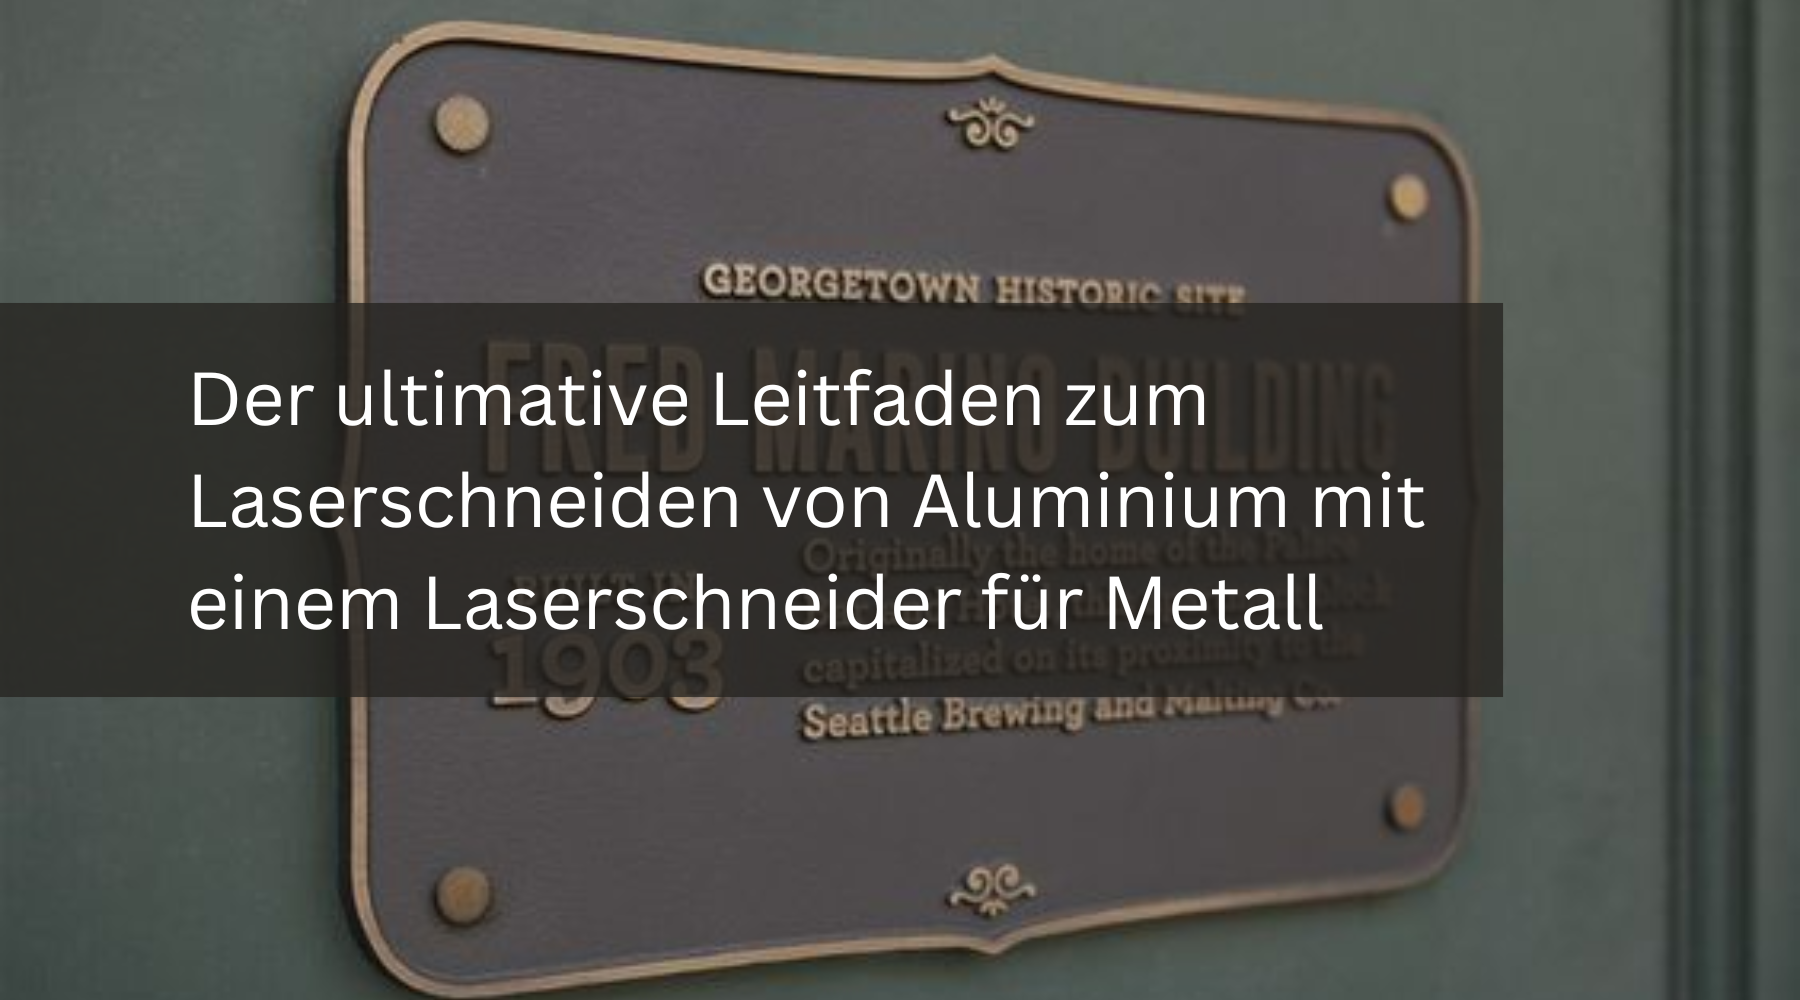 Der ultimative Leitfaden zum Laserschneiden von Aluminium mit einem Laserschneider für Metall